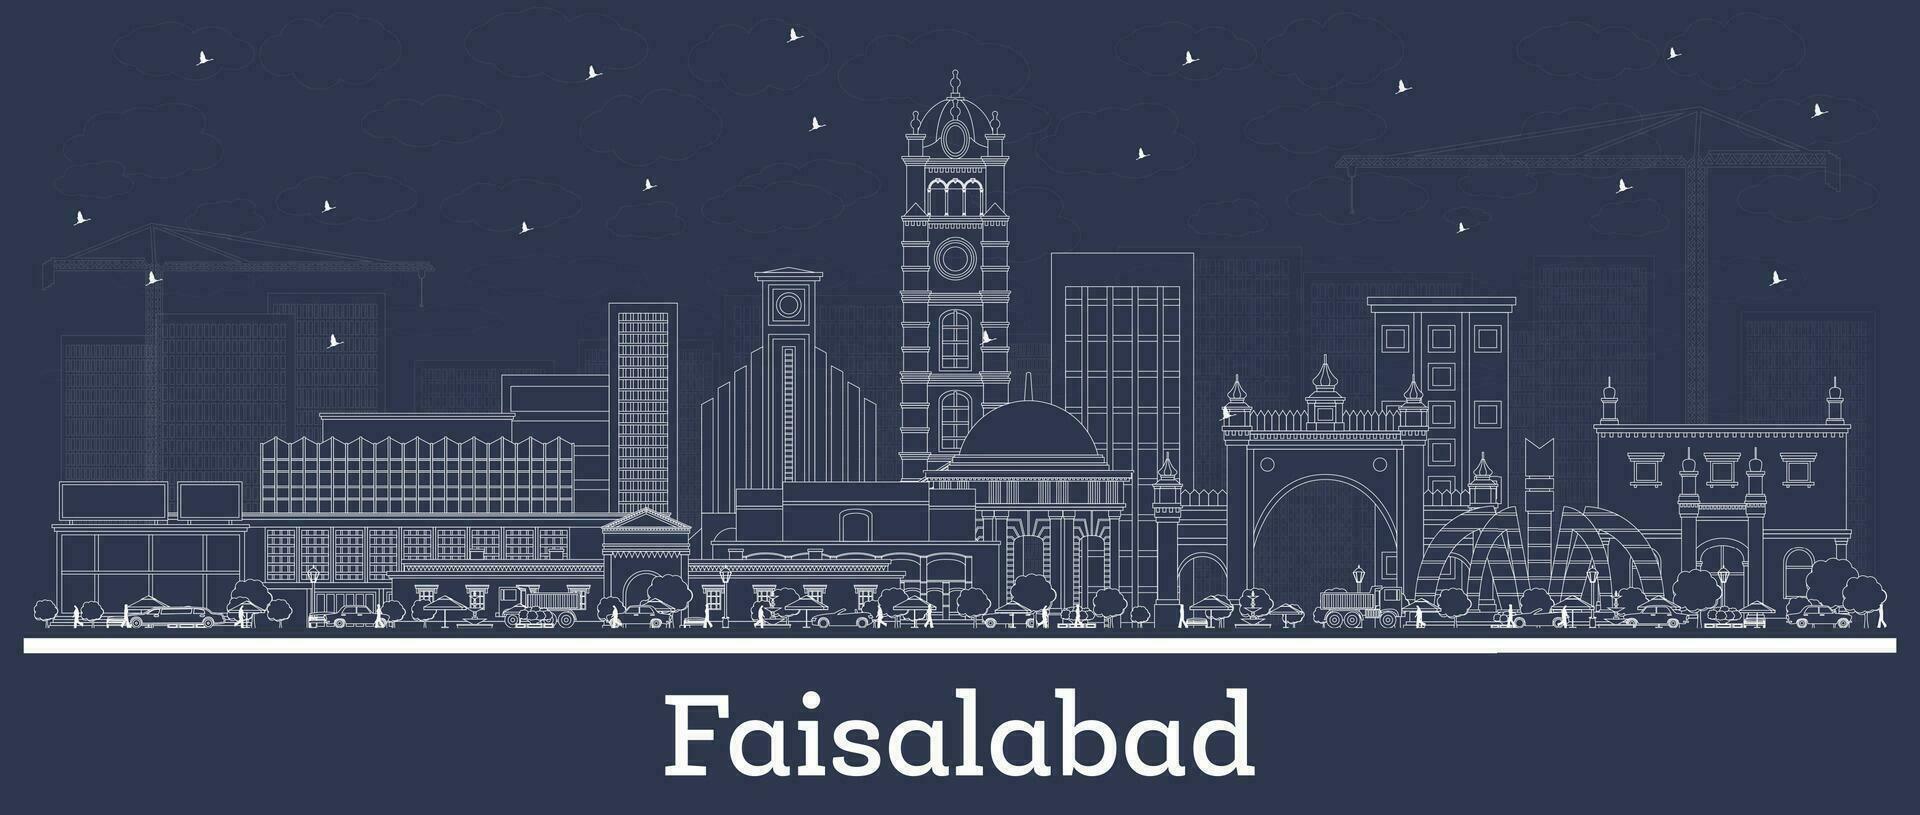 översikt faisalabad pakistan stad horisont med vit byggnader. företag resa och turism begrepp med historisk arkitektur. faisalabad stadsbild med landmärken. vektor